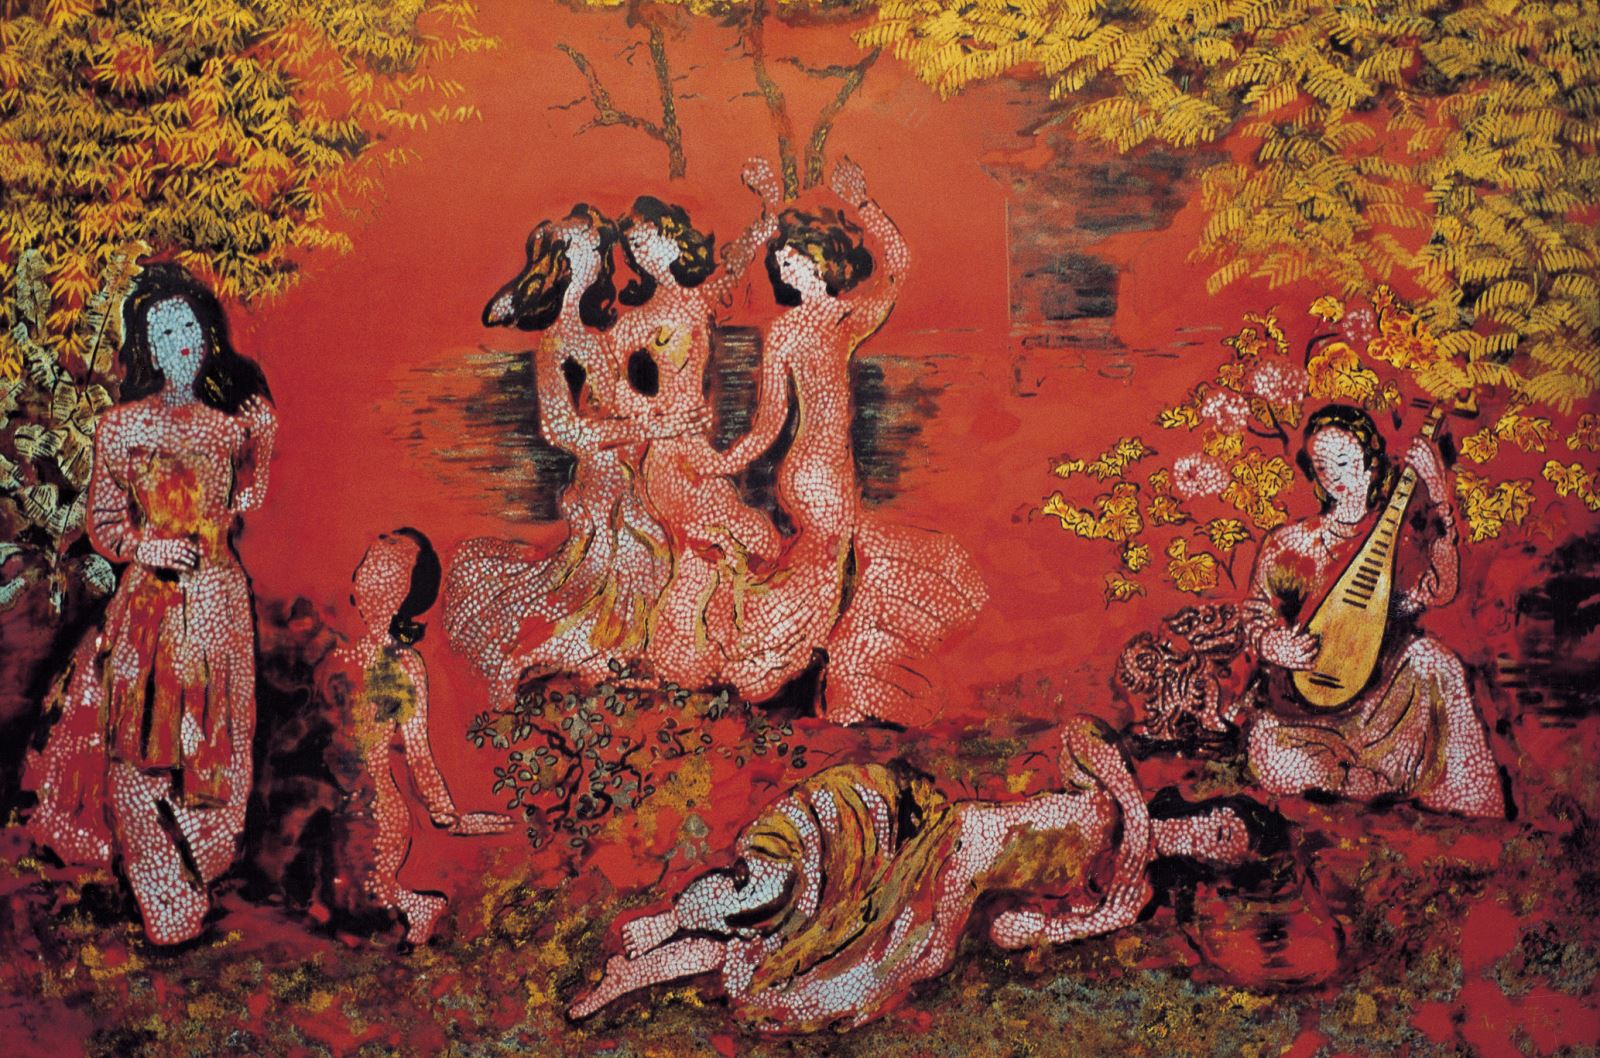 Nguyễn Gia Trí (1908 - 1993) là một trong số những danh họa tiêu biểu của nền mỹ thuật hiện đại Việt Nam. Là một họa sĩ, nhà biếm họa, đồ họa nổi tiếng và là người tiên phong trong lĩnh vực tranh sơn mài, không phải ngẫu nhiên mà tên ông được xếp ở vị trí đầu tiên trong “bộ tứ” của hội họa Việt Nam hiện đại gồm “nhất Trí, nhì Vân, tam Lân, tứ Cẩn” (Nguyễn Gia Trí, Tô Ngọc Vân, Nguyễn Tường Lân, Trần Văn Cẩn).